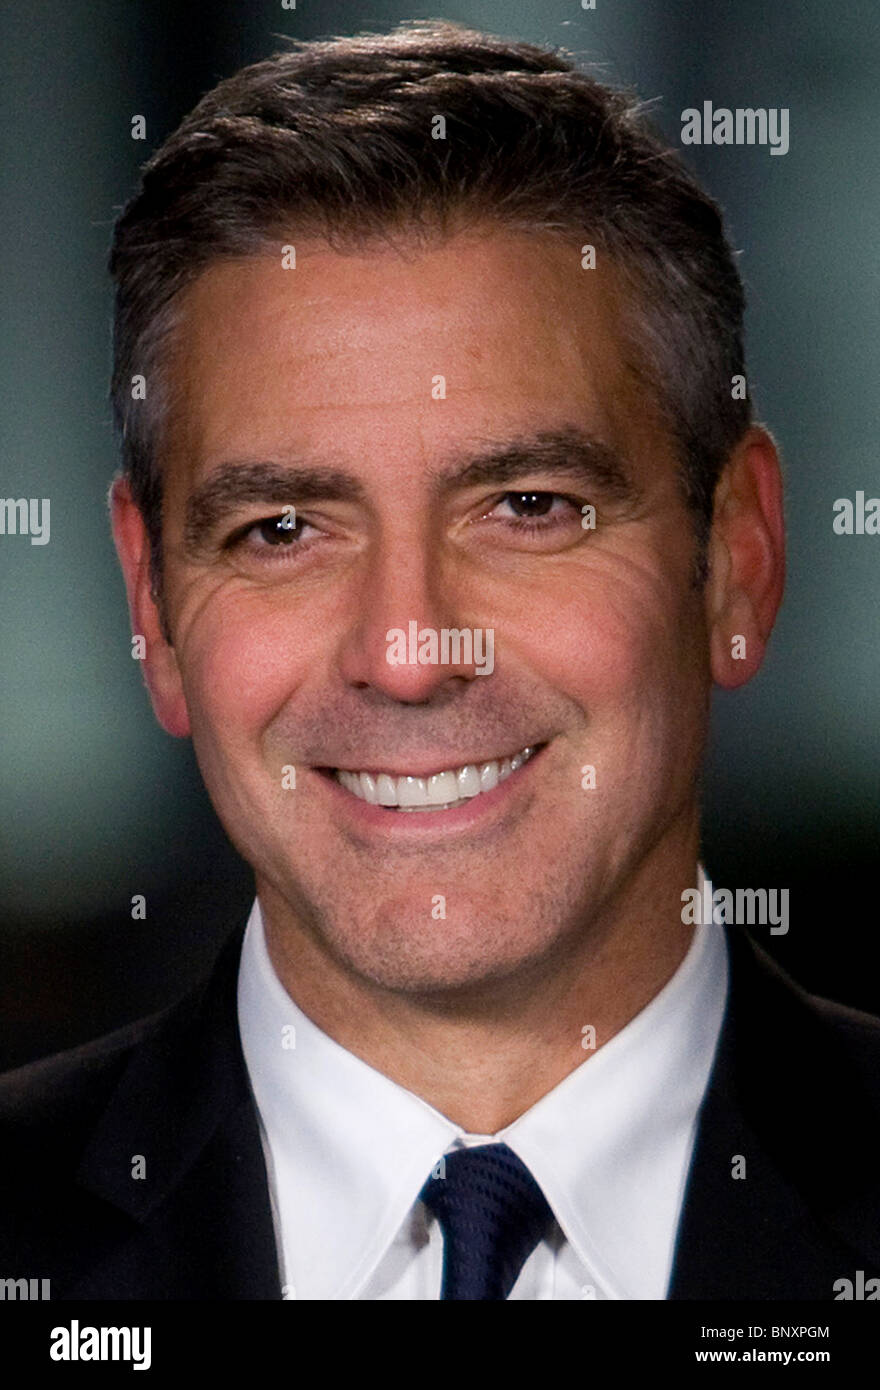 Schauspieler George Clooney. Stockfoto